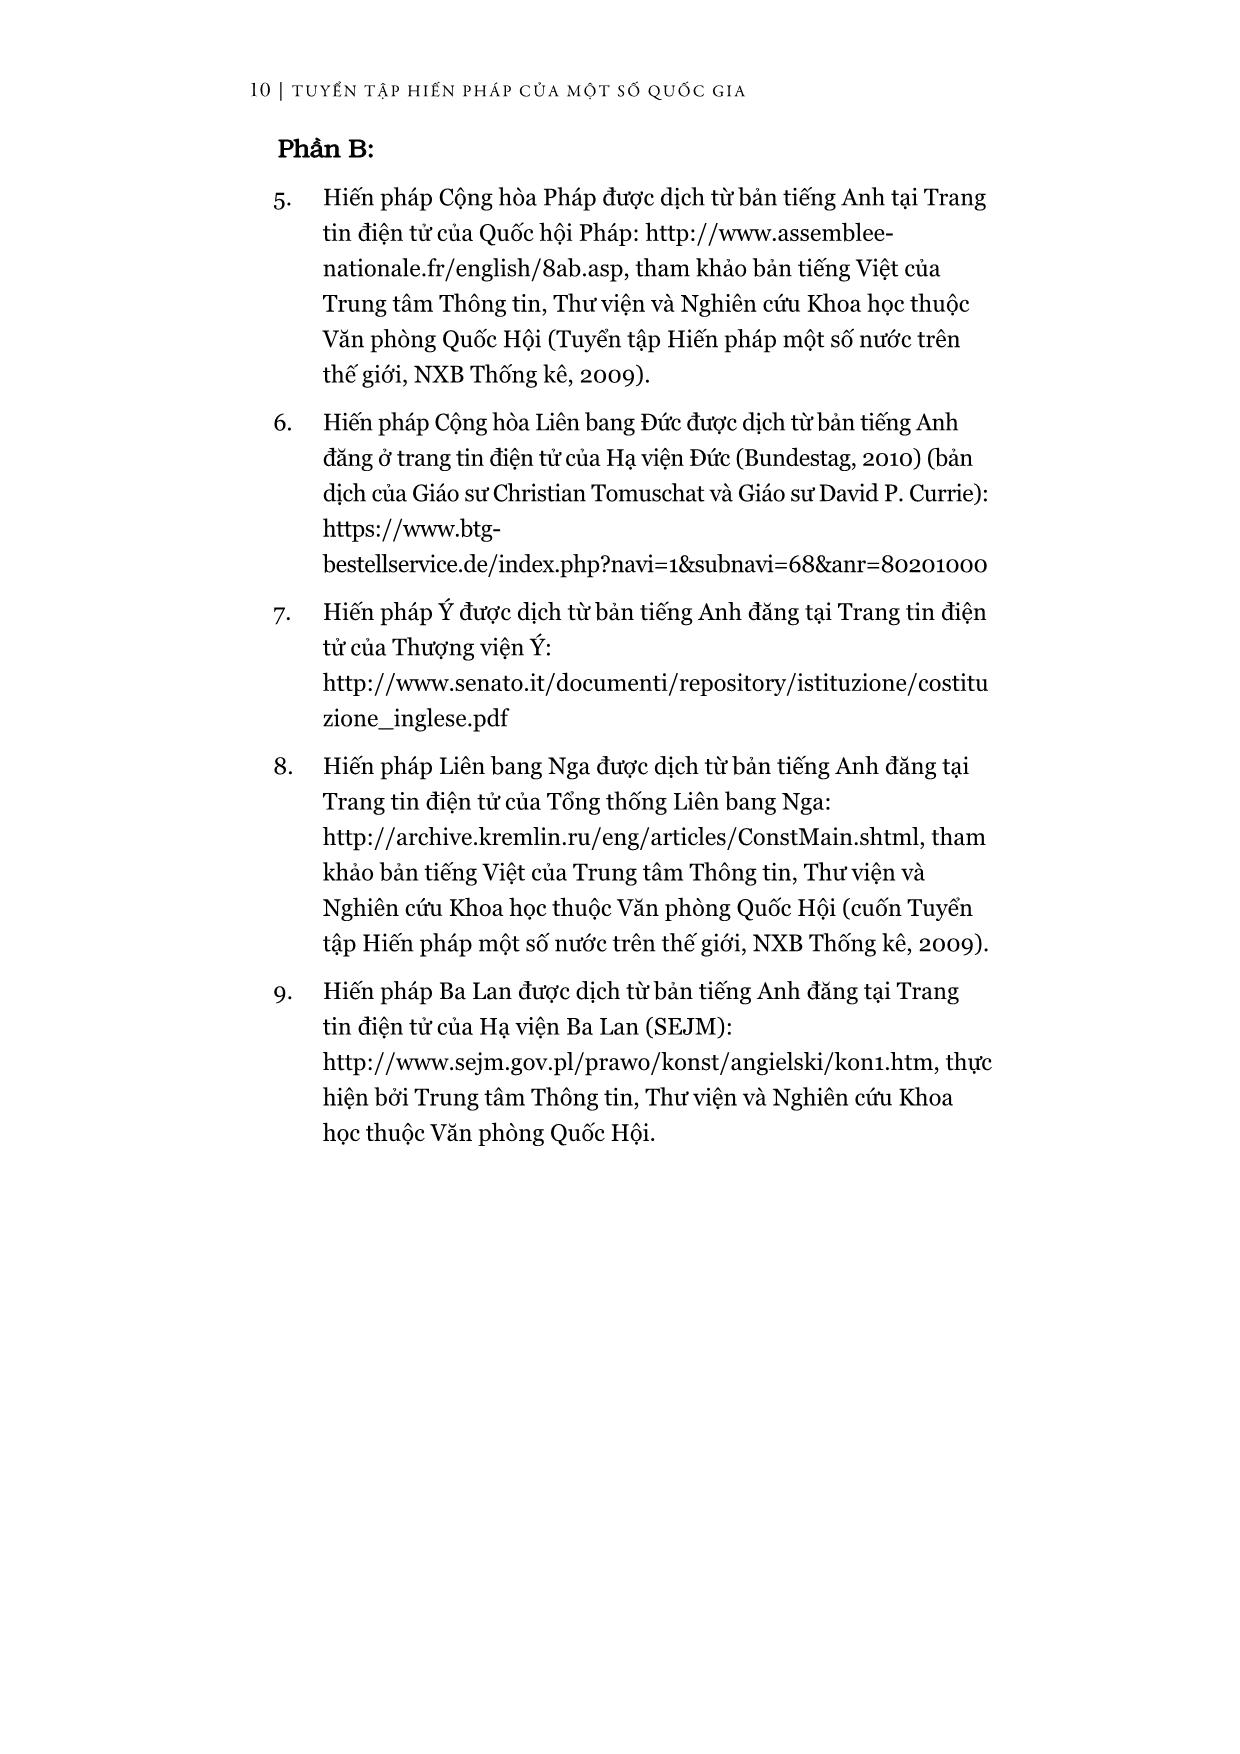 Tuyển tập Hiến pháp của một số quốc gia (Phần 1) trang 5